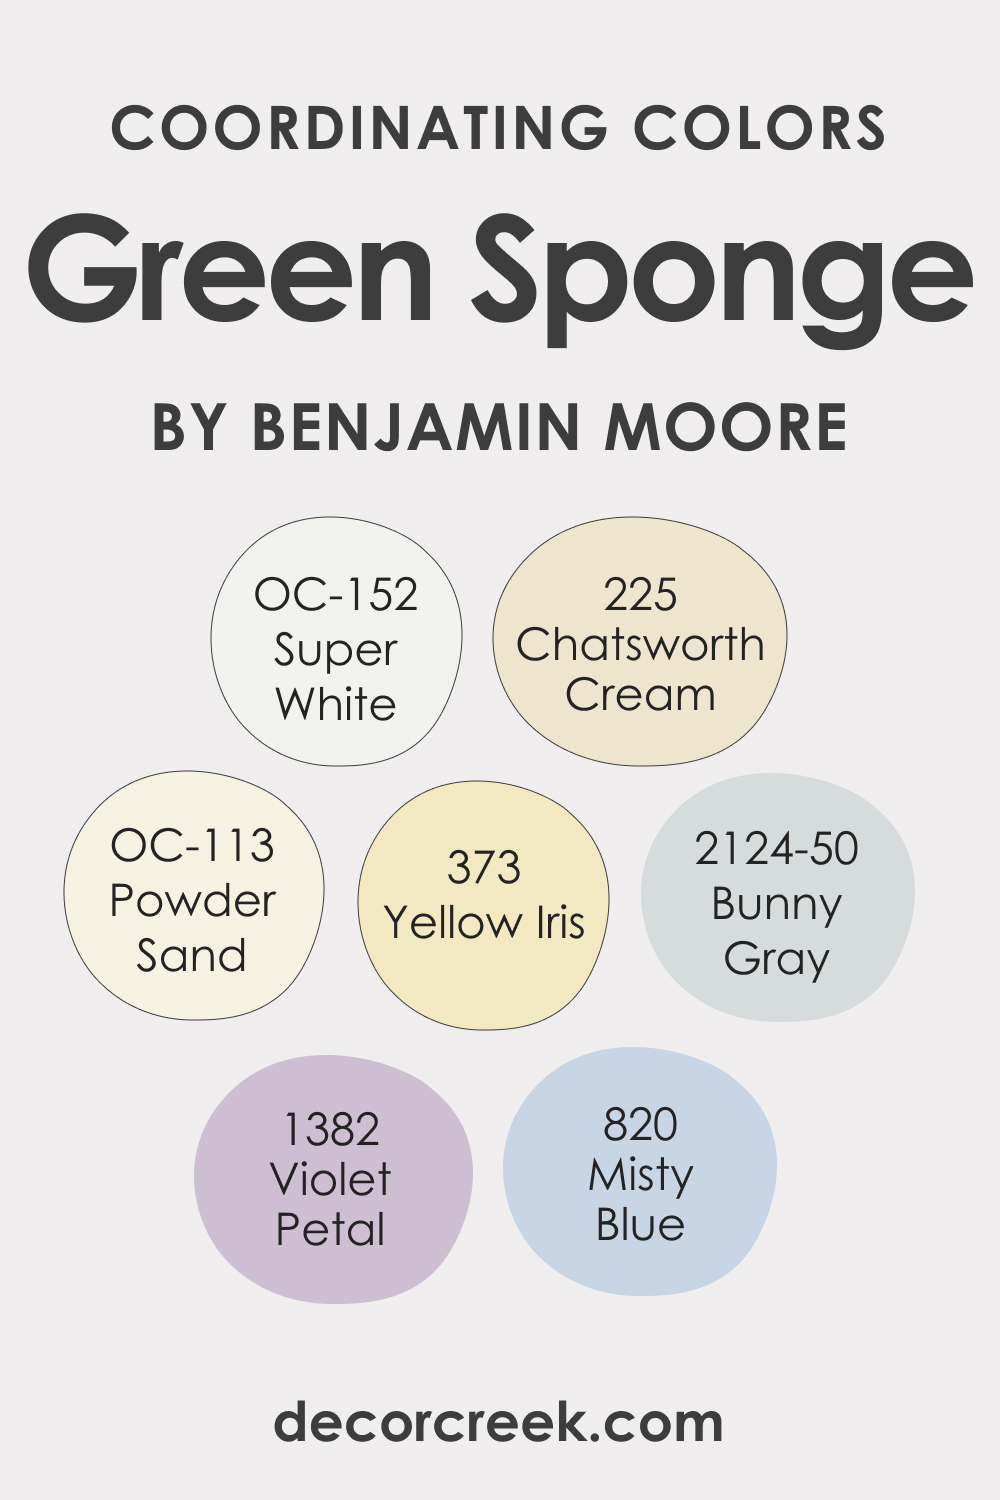 Coordinating Colors of Green Sponge 2046-40